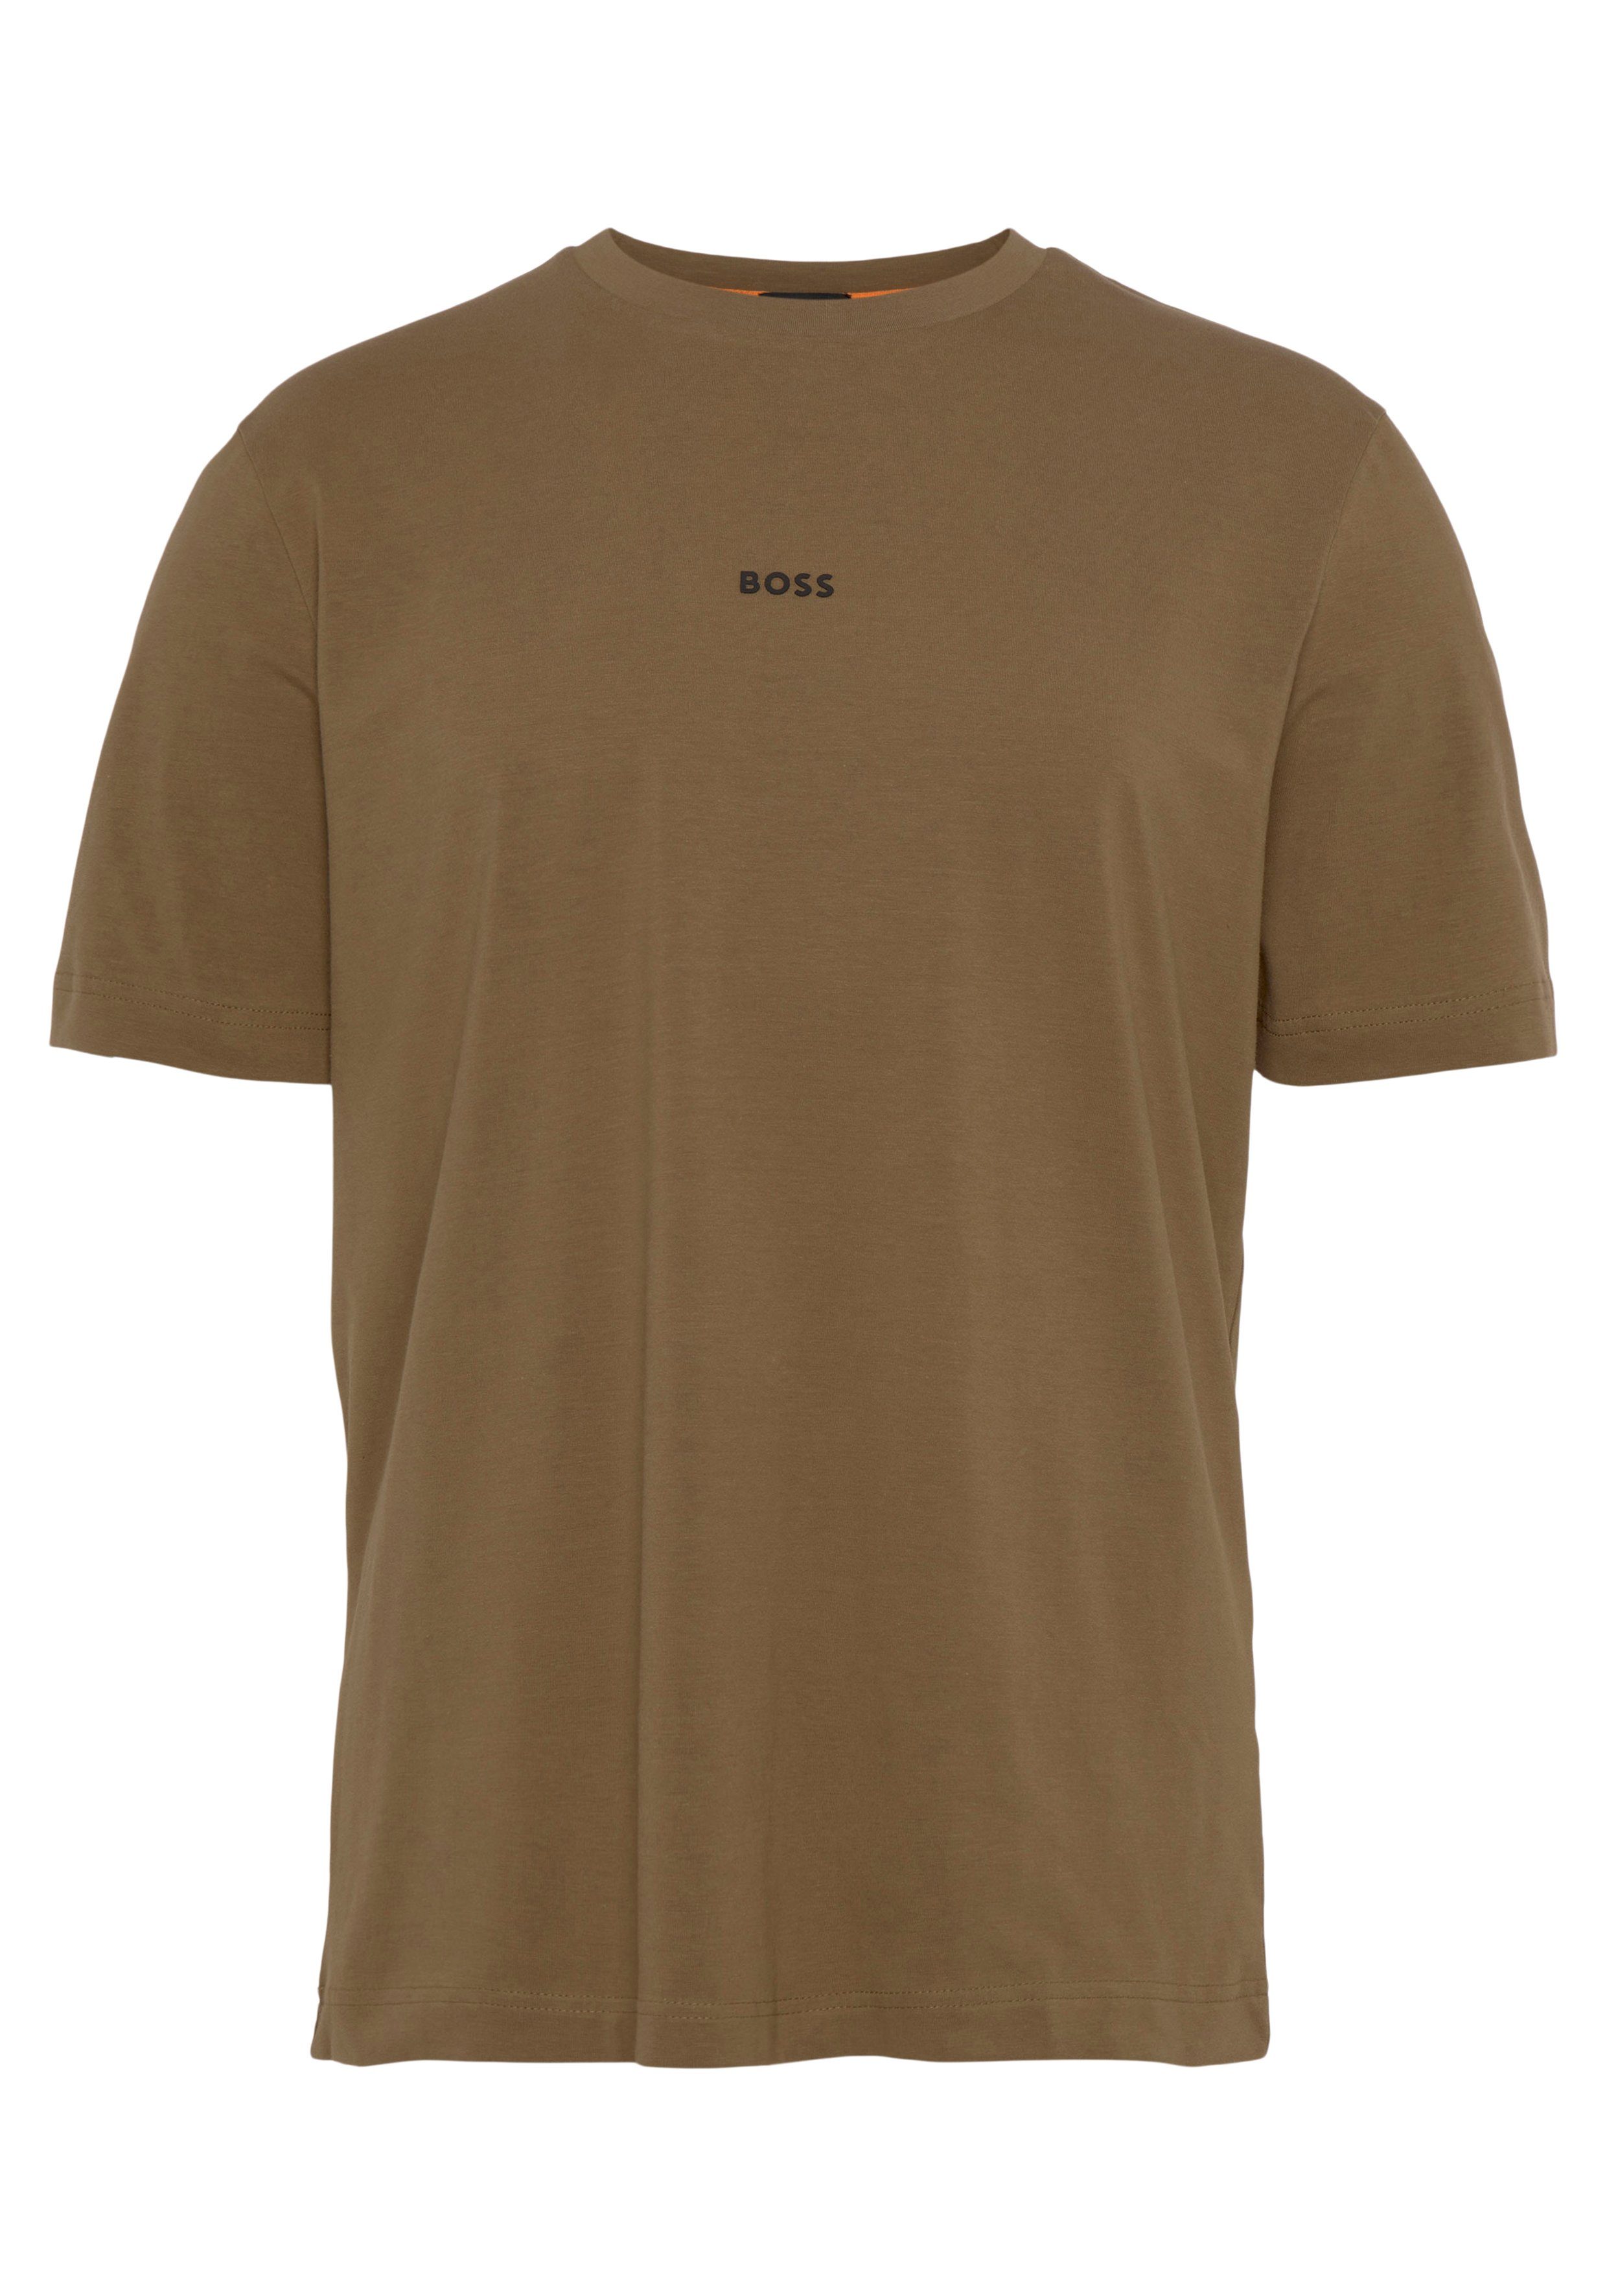 BOSS ORANGE Kurzarmshirt TChup mit der beige1 Brust auf BOSS-Logodruck